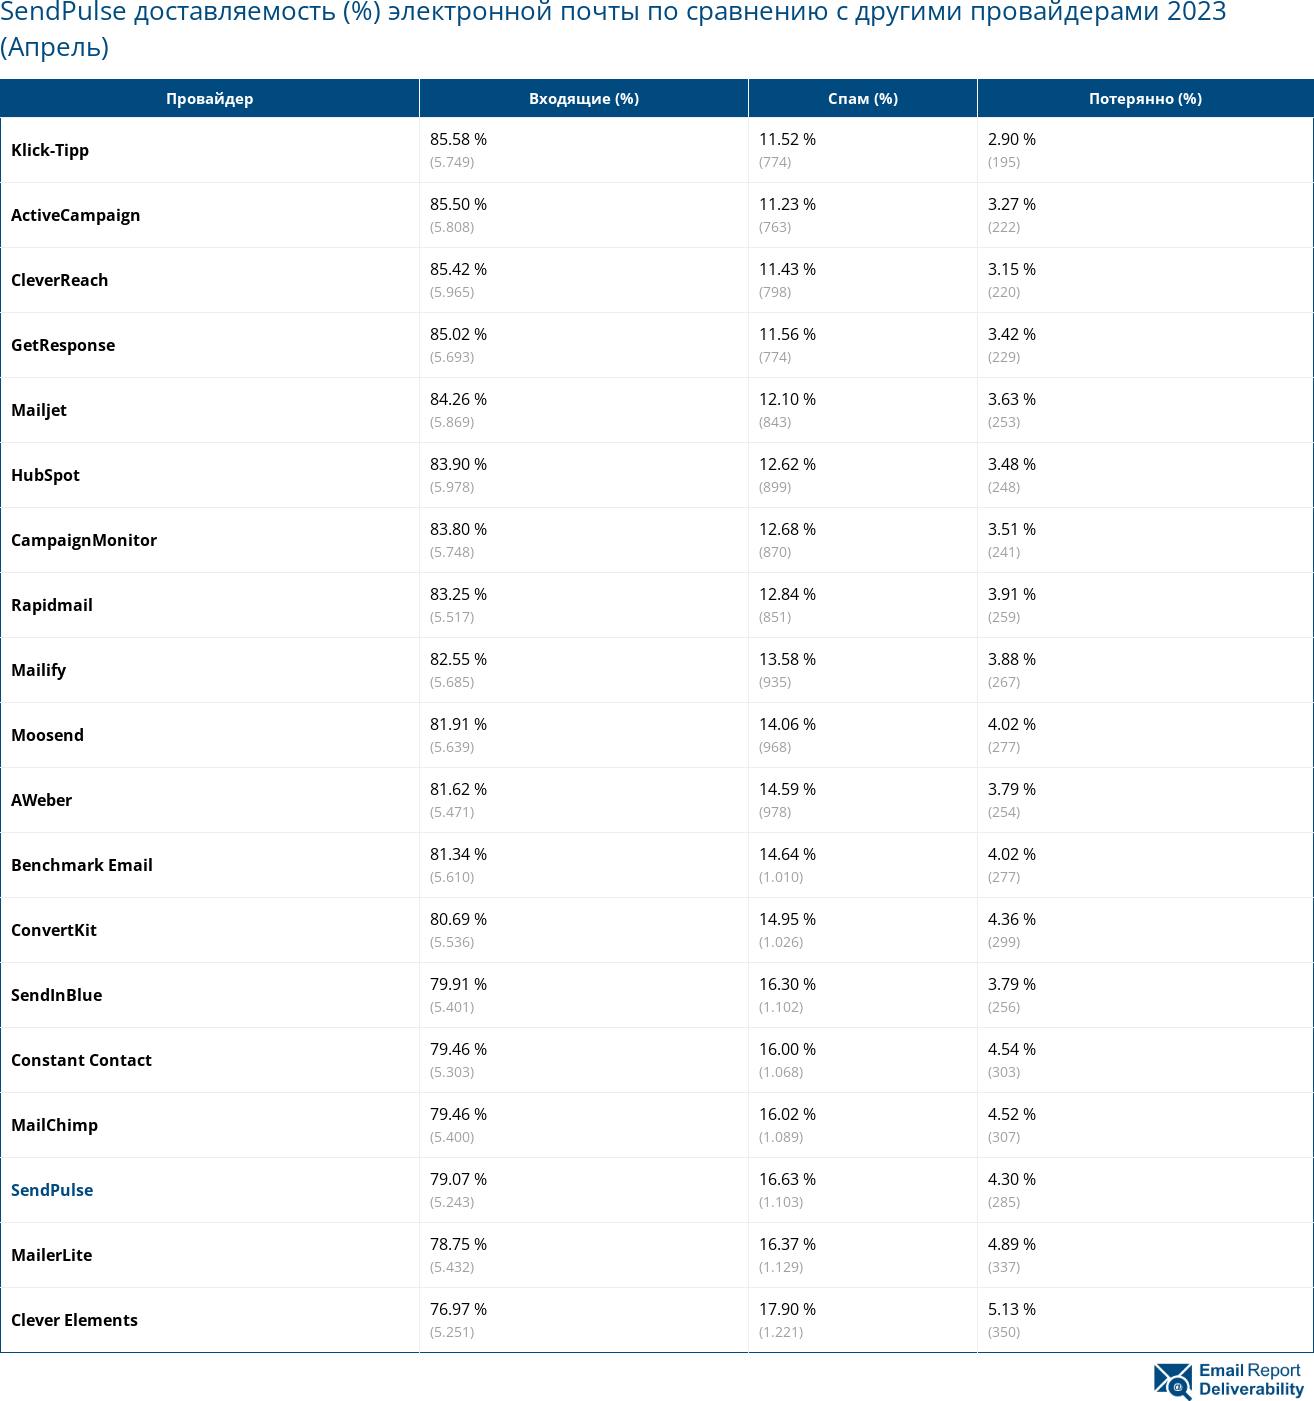 SendPulse доставляемость (%) электронной почты по сравнению с другими провайдерами 2023 (Апрель)